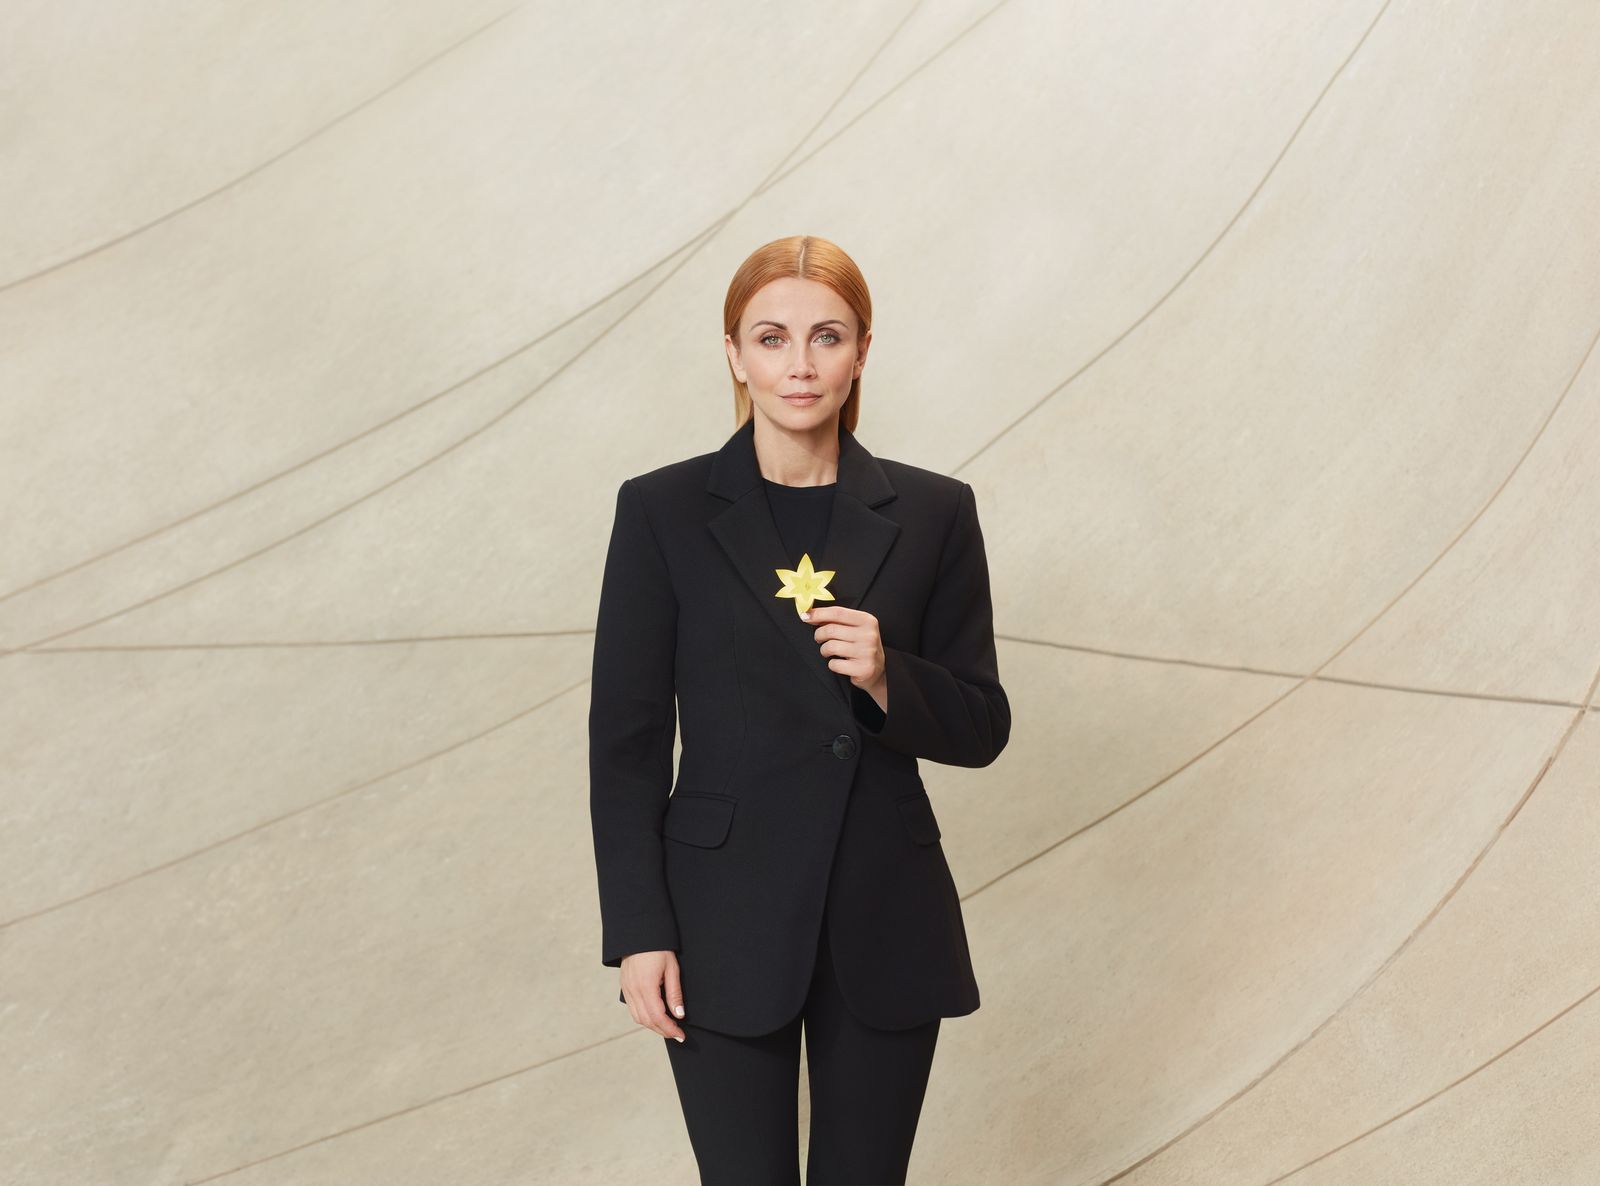 Katarzyna Zielińska w czarnym garniturze trzyma przed sobą w dłoni, na wysokości klatki piersiowej, żółty żonkil, symbol akcji